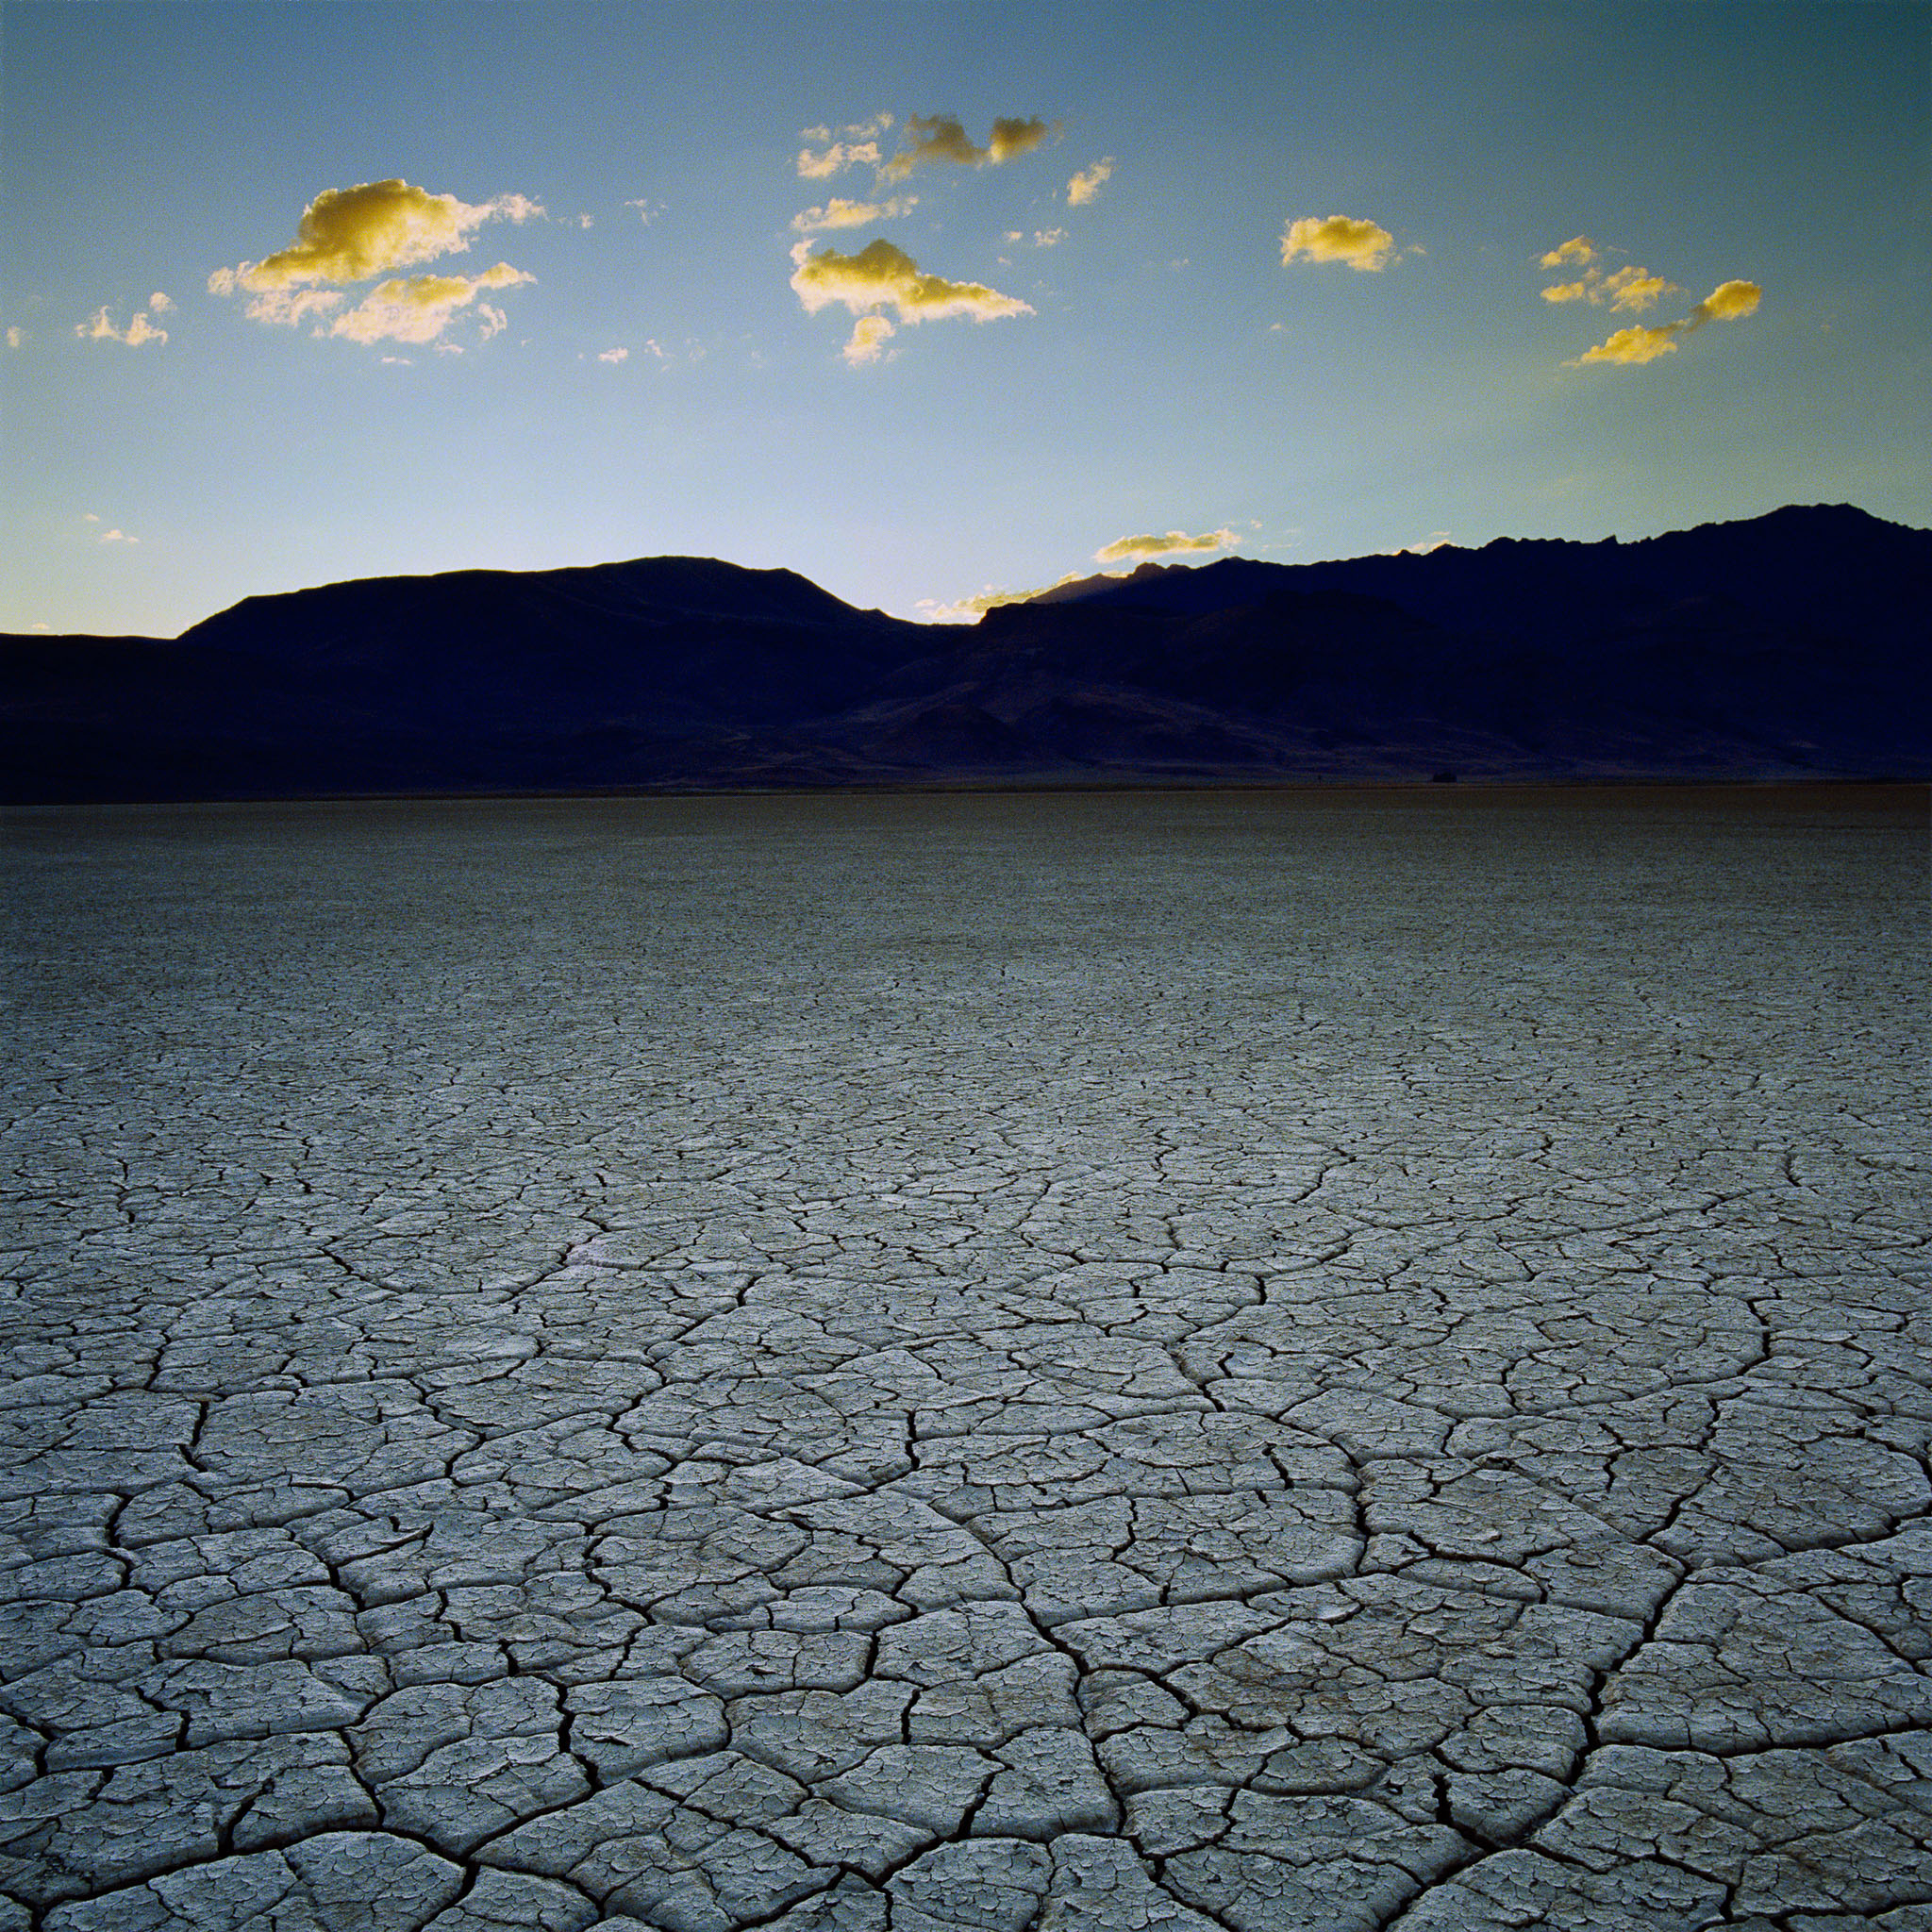 alvord-desert-steen-mnts-central-or-8x8.jpg